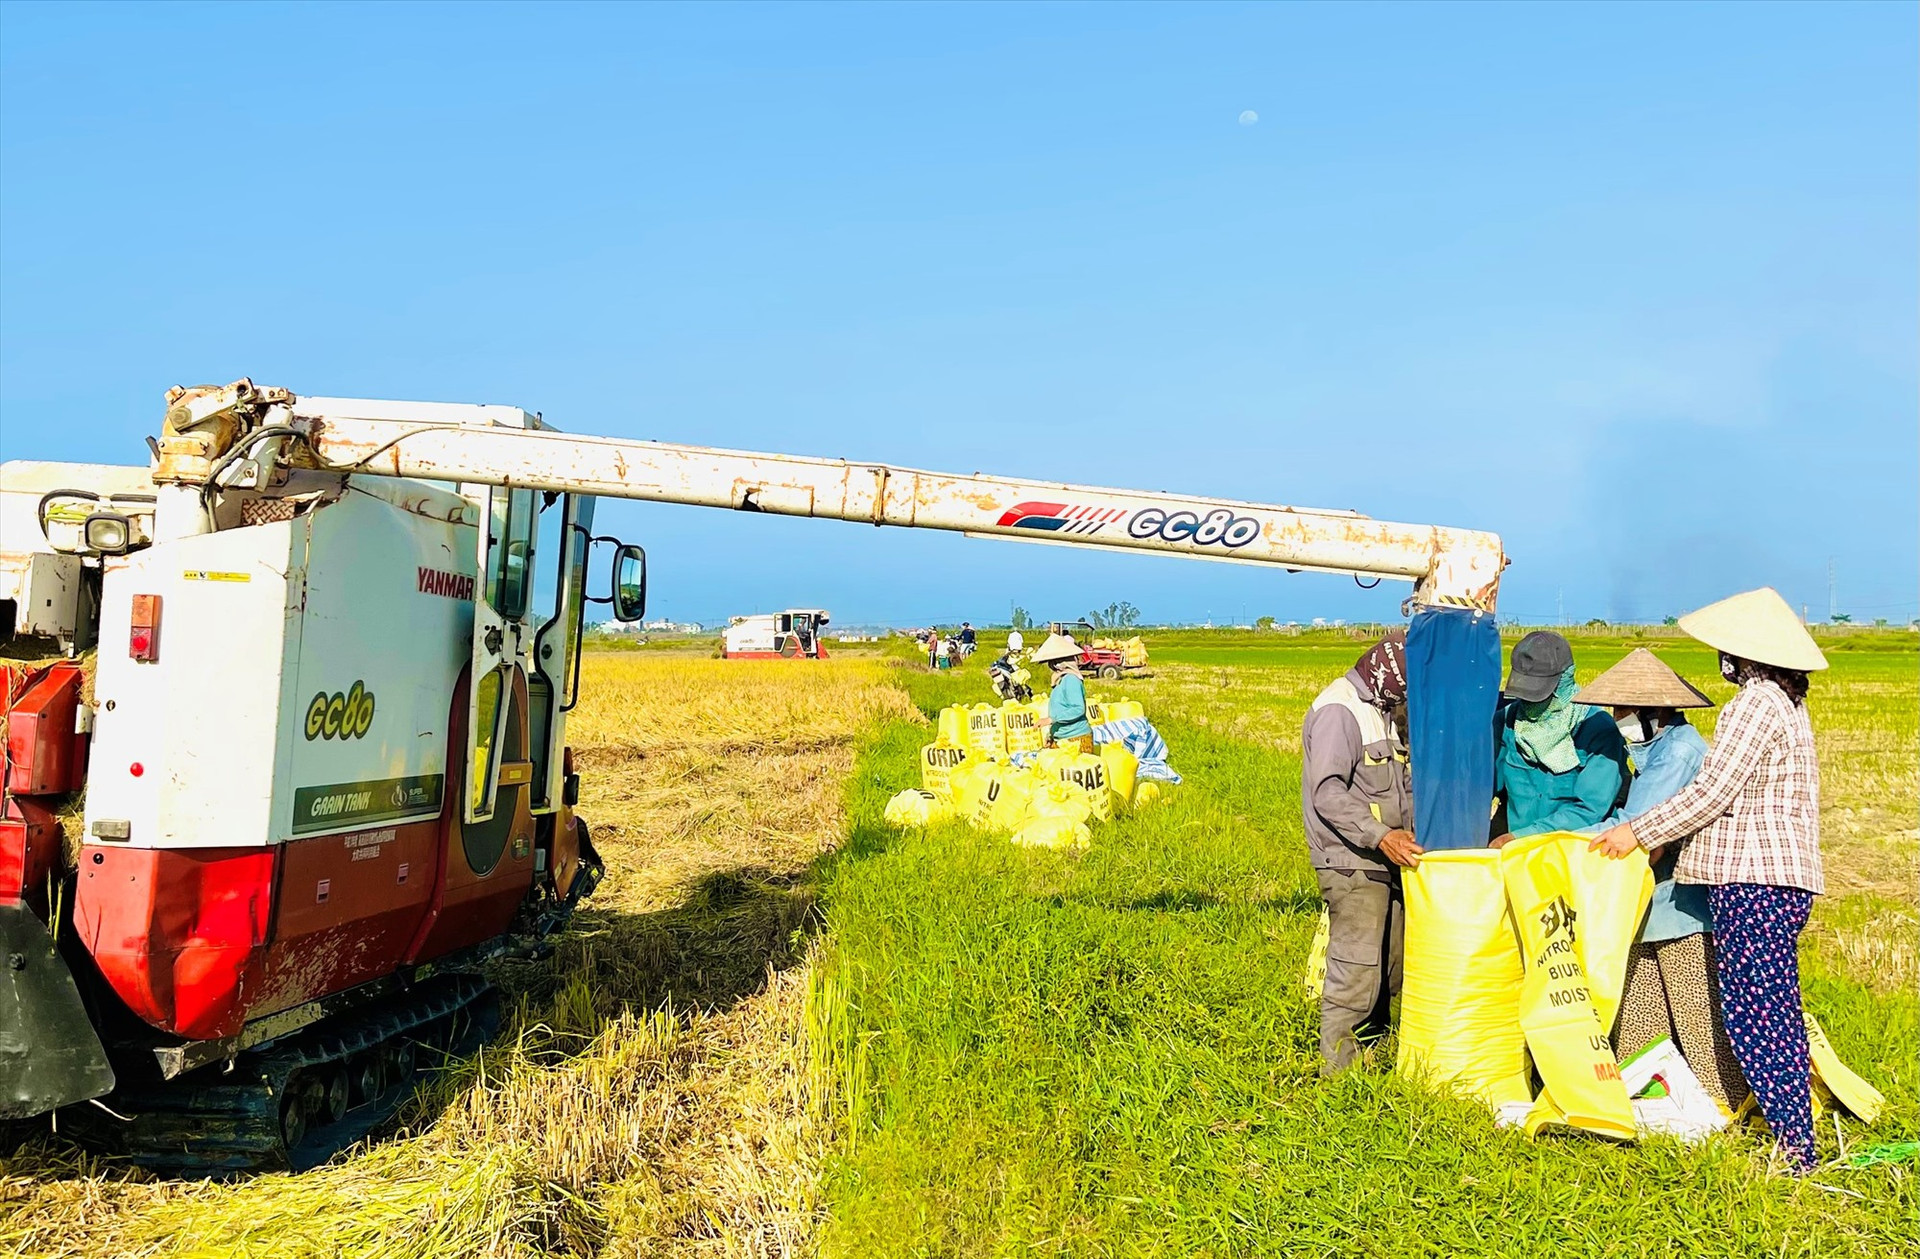 Đông xuân năm nay, tổng sản lượng lúa của Quảng Nam đạt 248.700 tấn, tăng 15.380 tấn so với cùng vụ sản xuất năm ngoái. Ảnh: PV